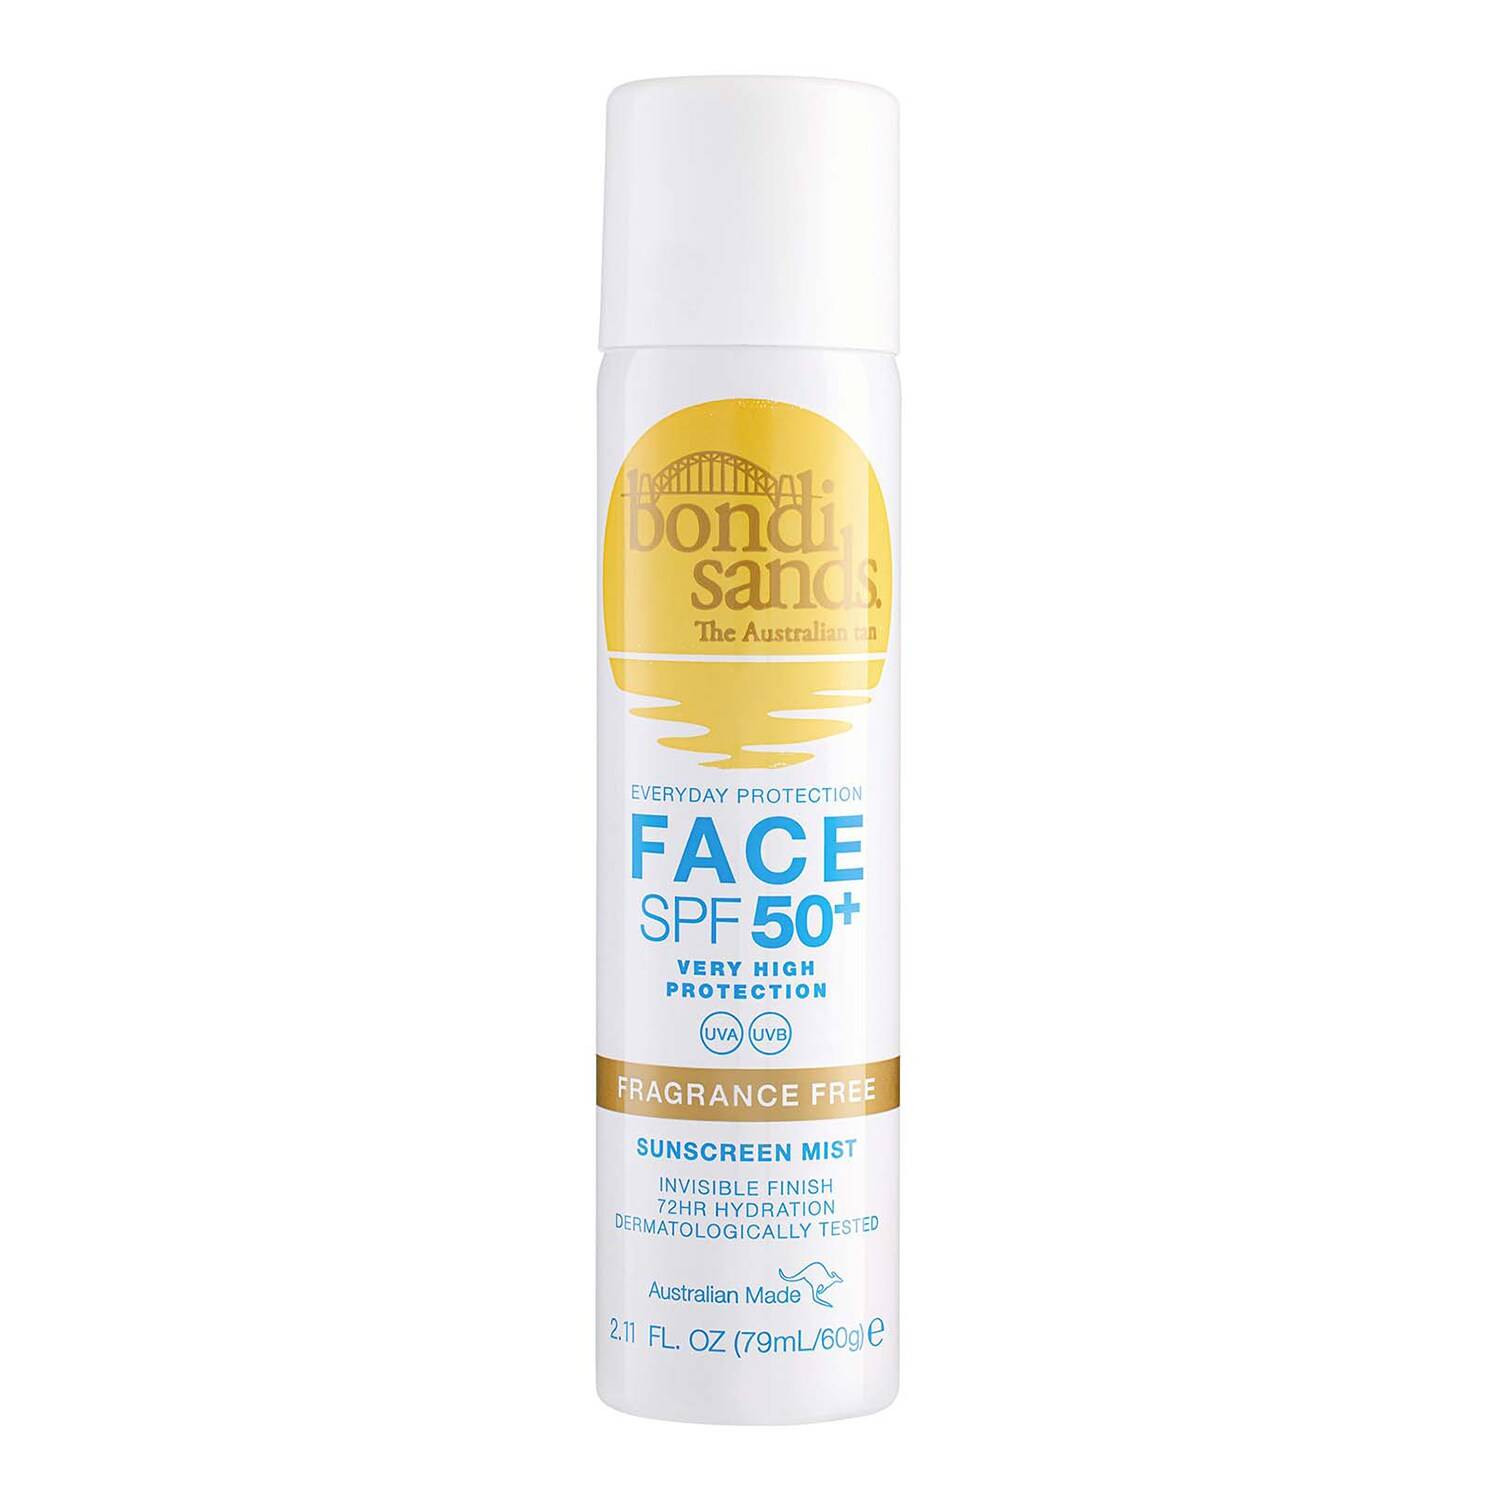 Bondi Sands Spf50+ Fragrance Free Face Mist 60G